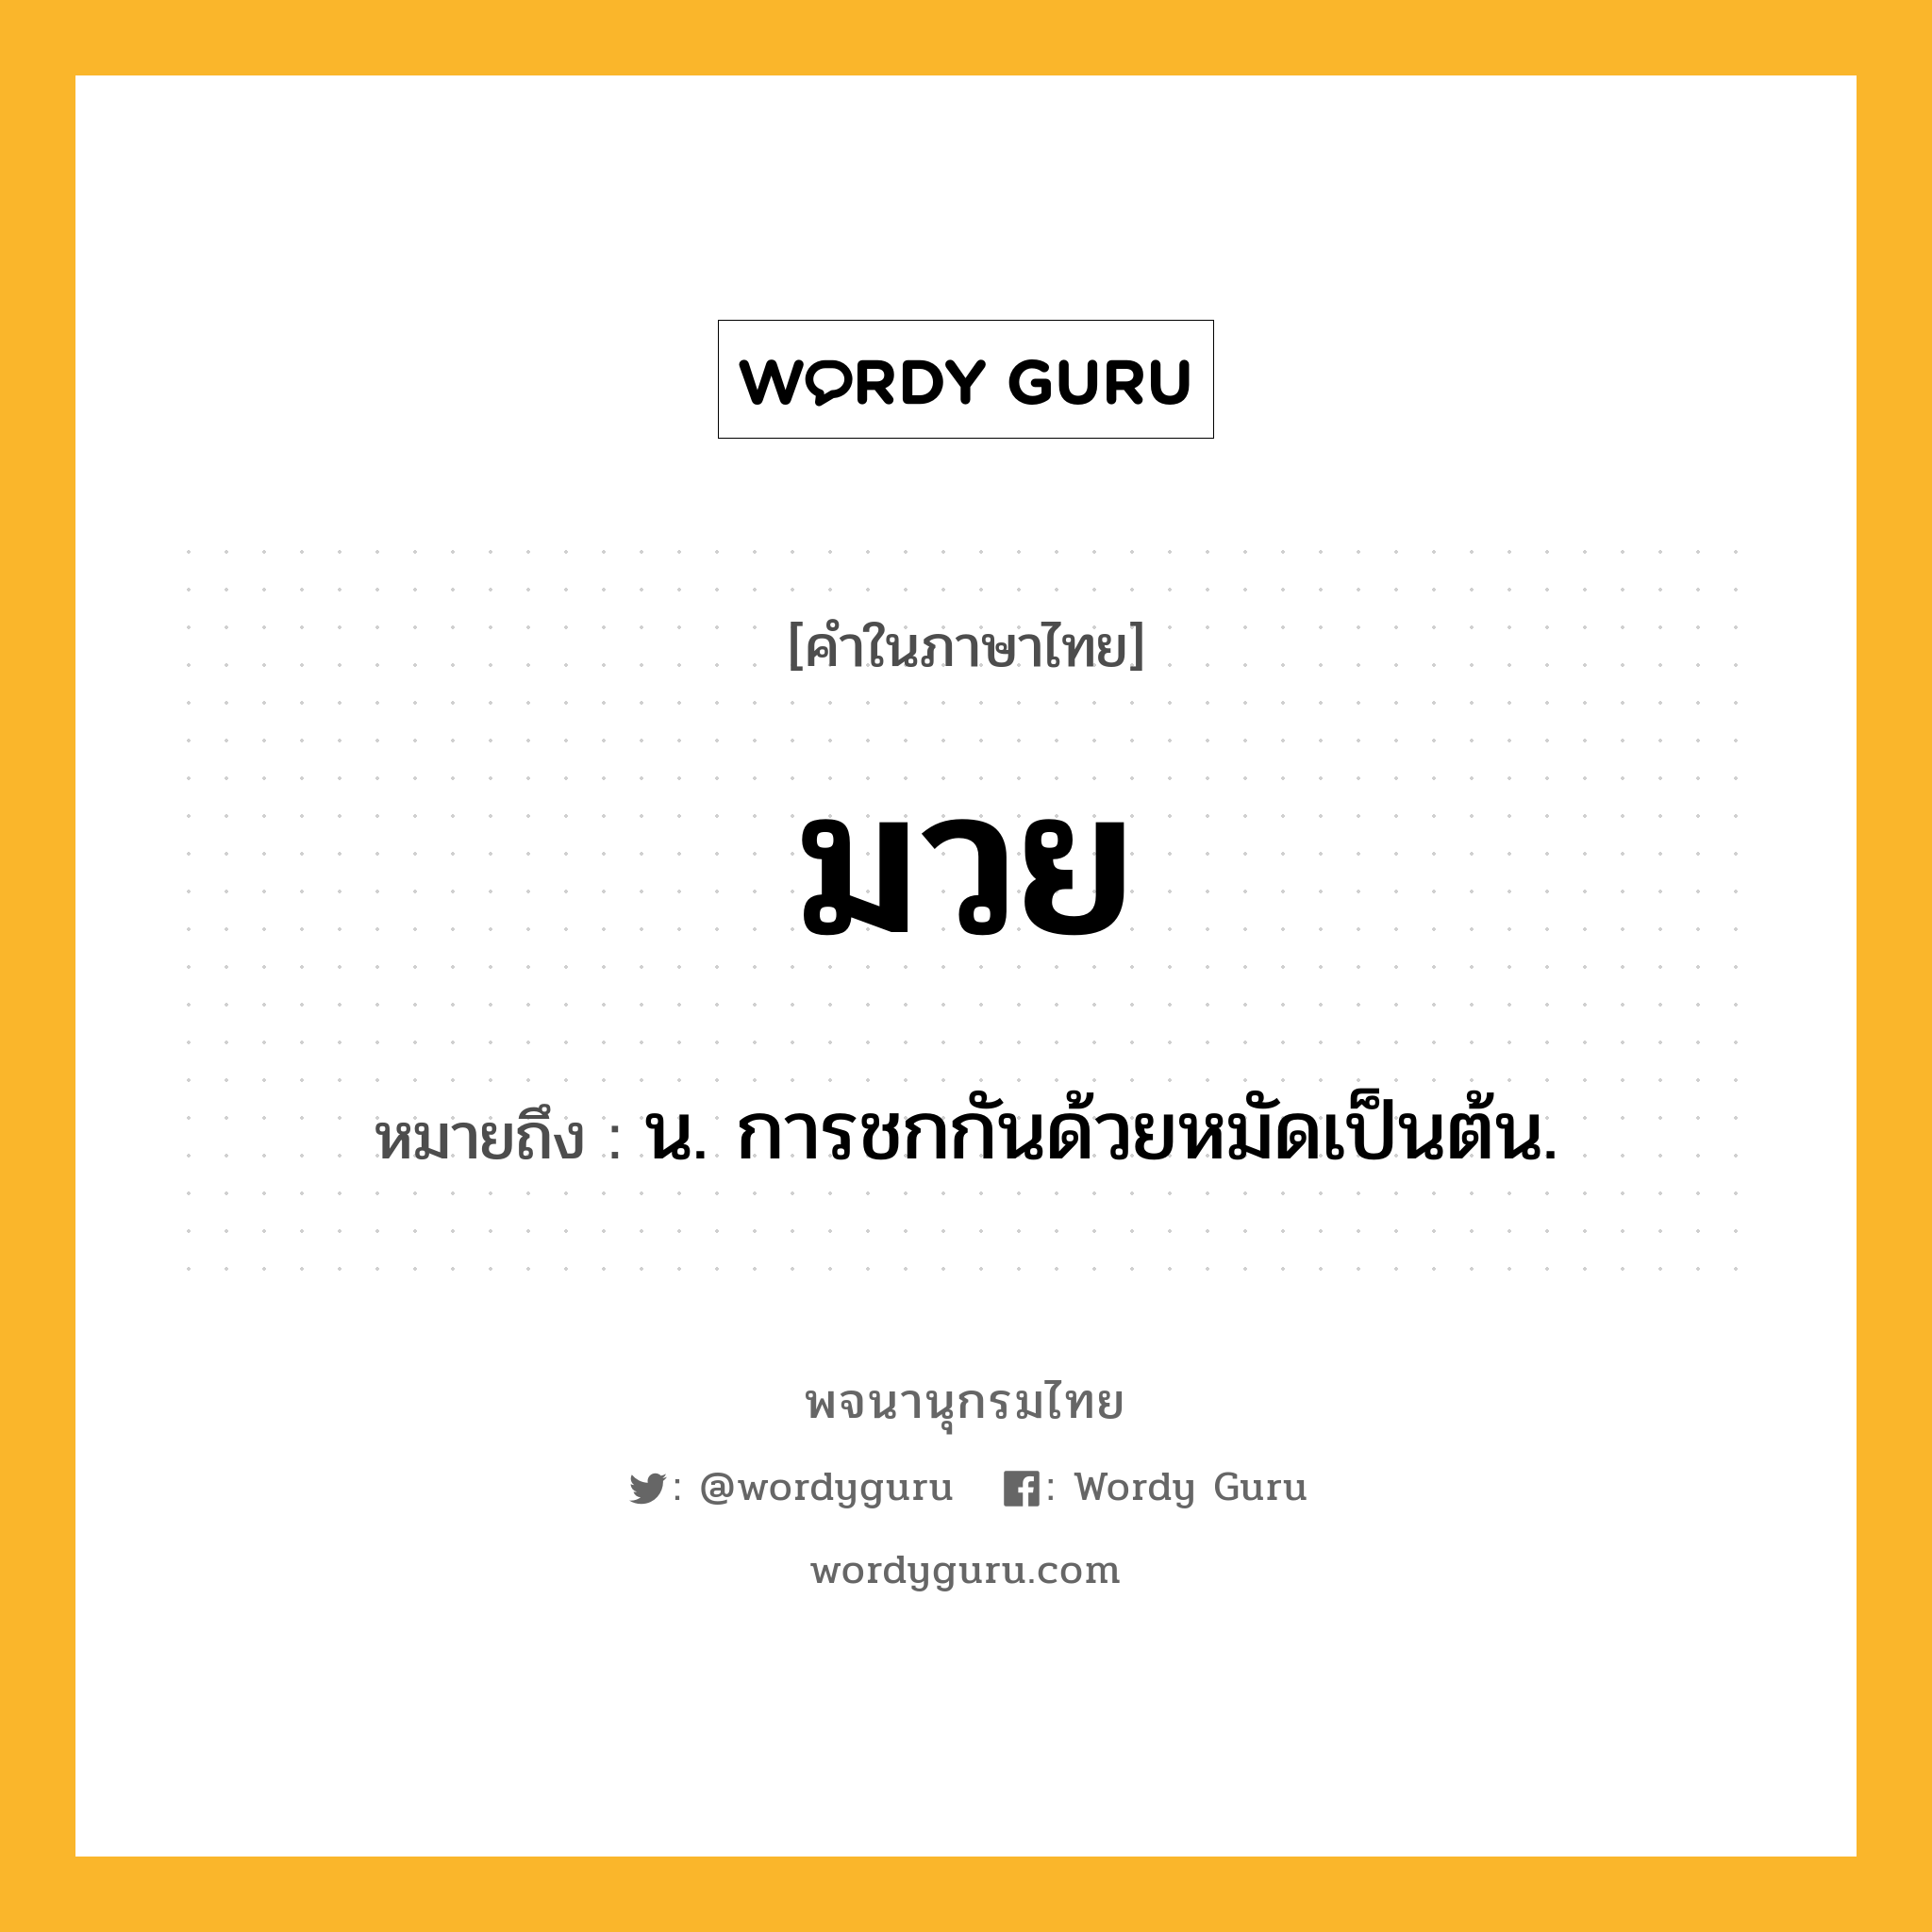 มวย หมายถึงอะไร?, คำในภาษาไทย มวย หมายถึง น. การชกกันด้วยหมัดเป็นต้น.